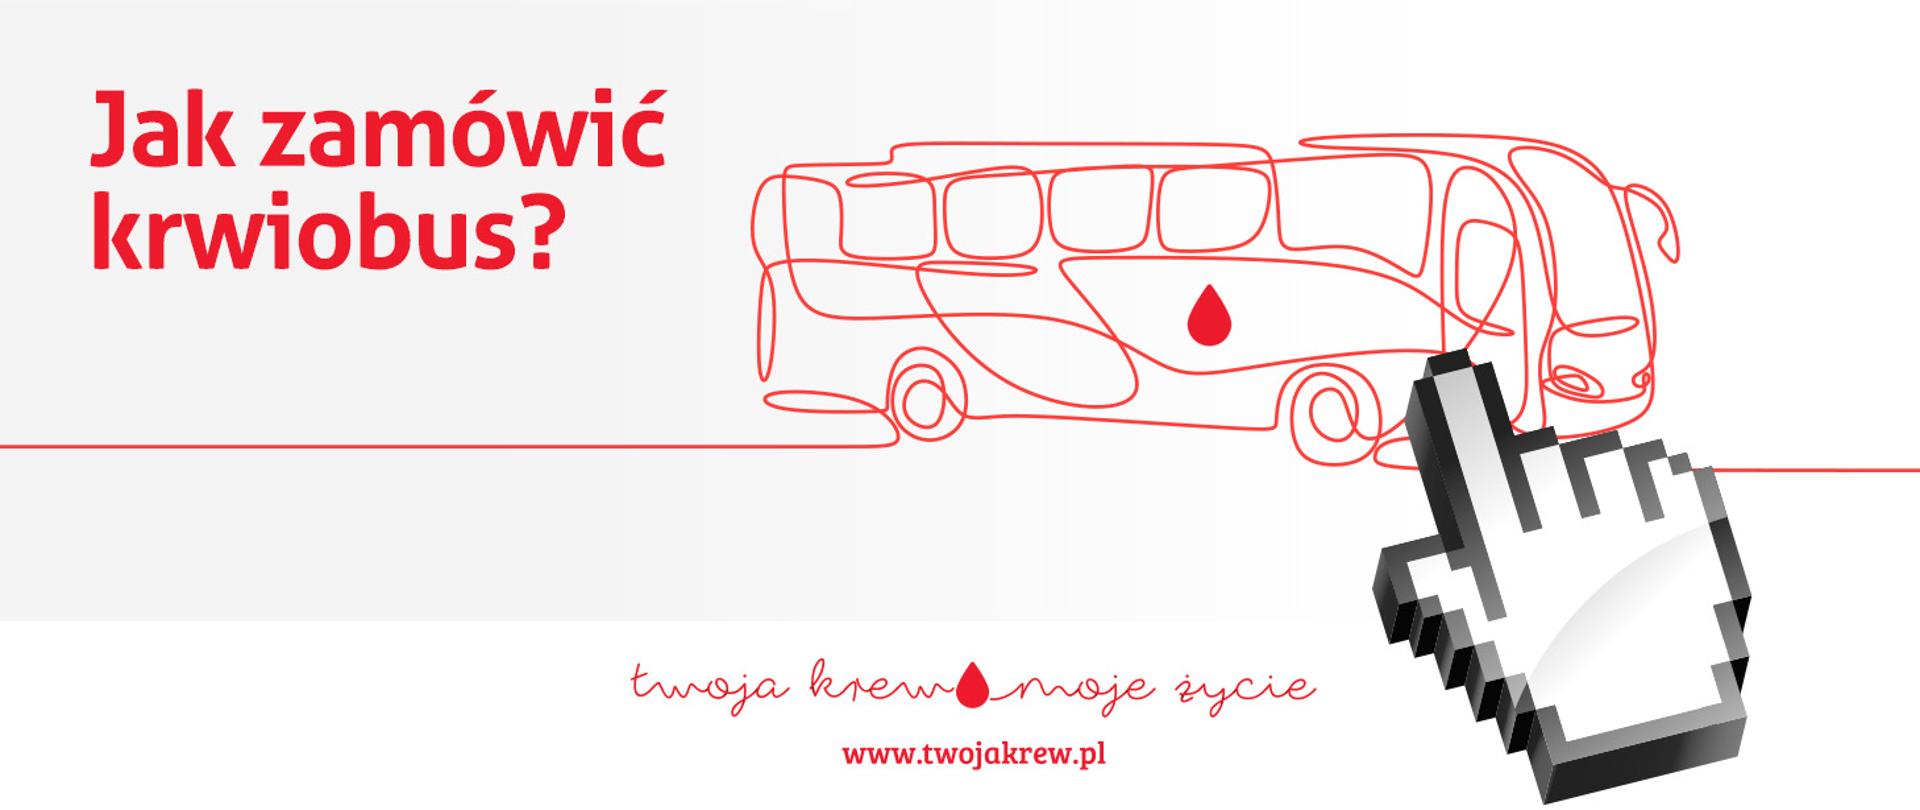 grafika informująca o możliwości zamówienia krwiobusu do pobierania krwi